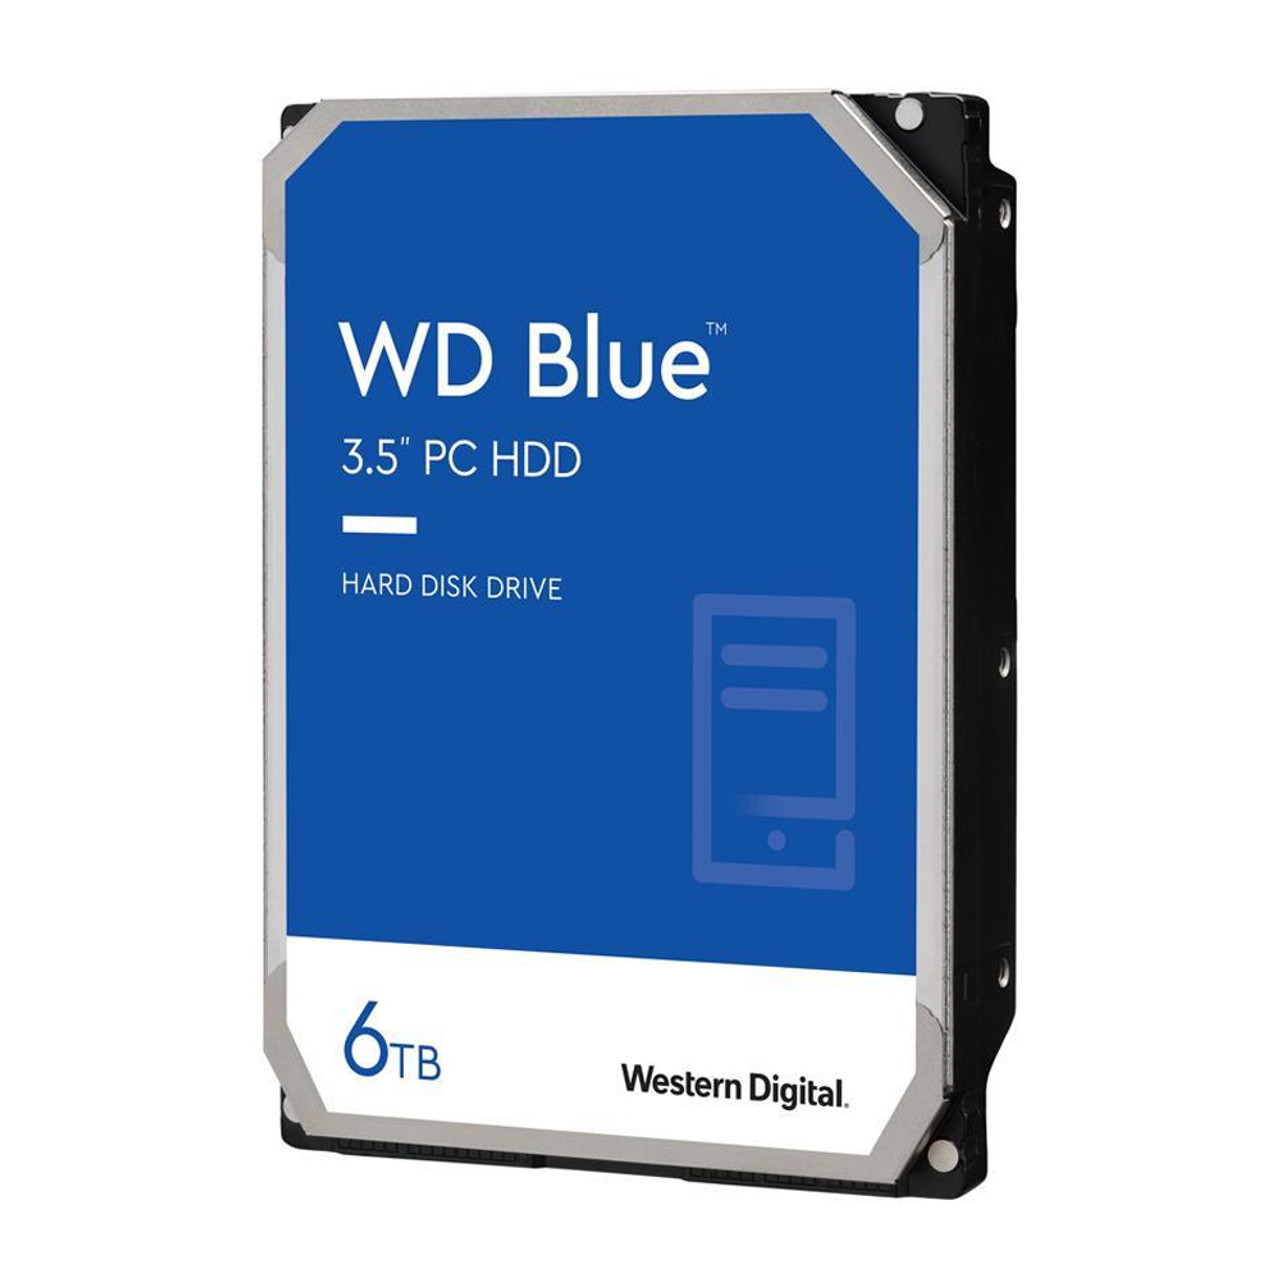 WD WD60EZAZ 6TB WD Blue PC Internal Hard Drive HDD - 5400 RPM, SATA 6 Gb/s, 256 MB Cache, 3.5"